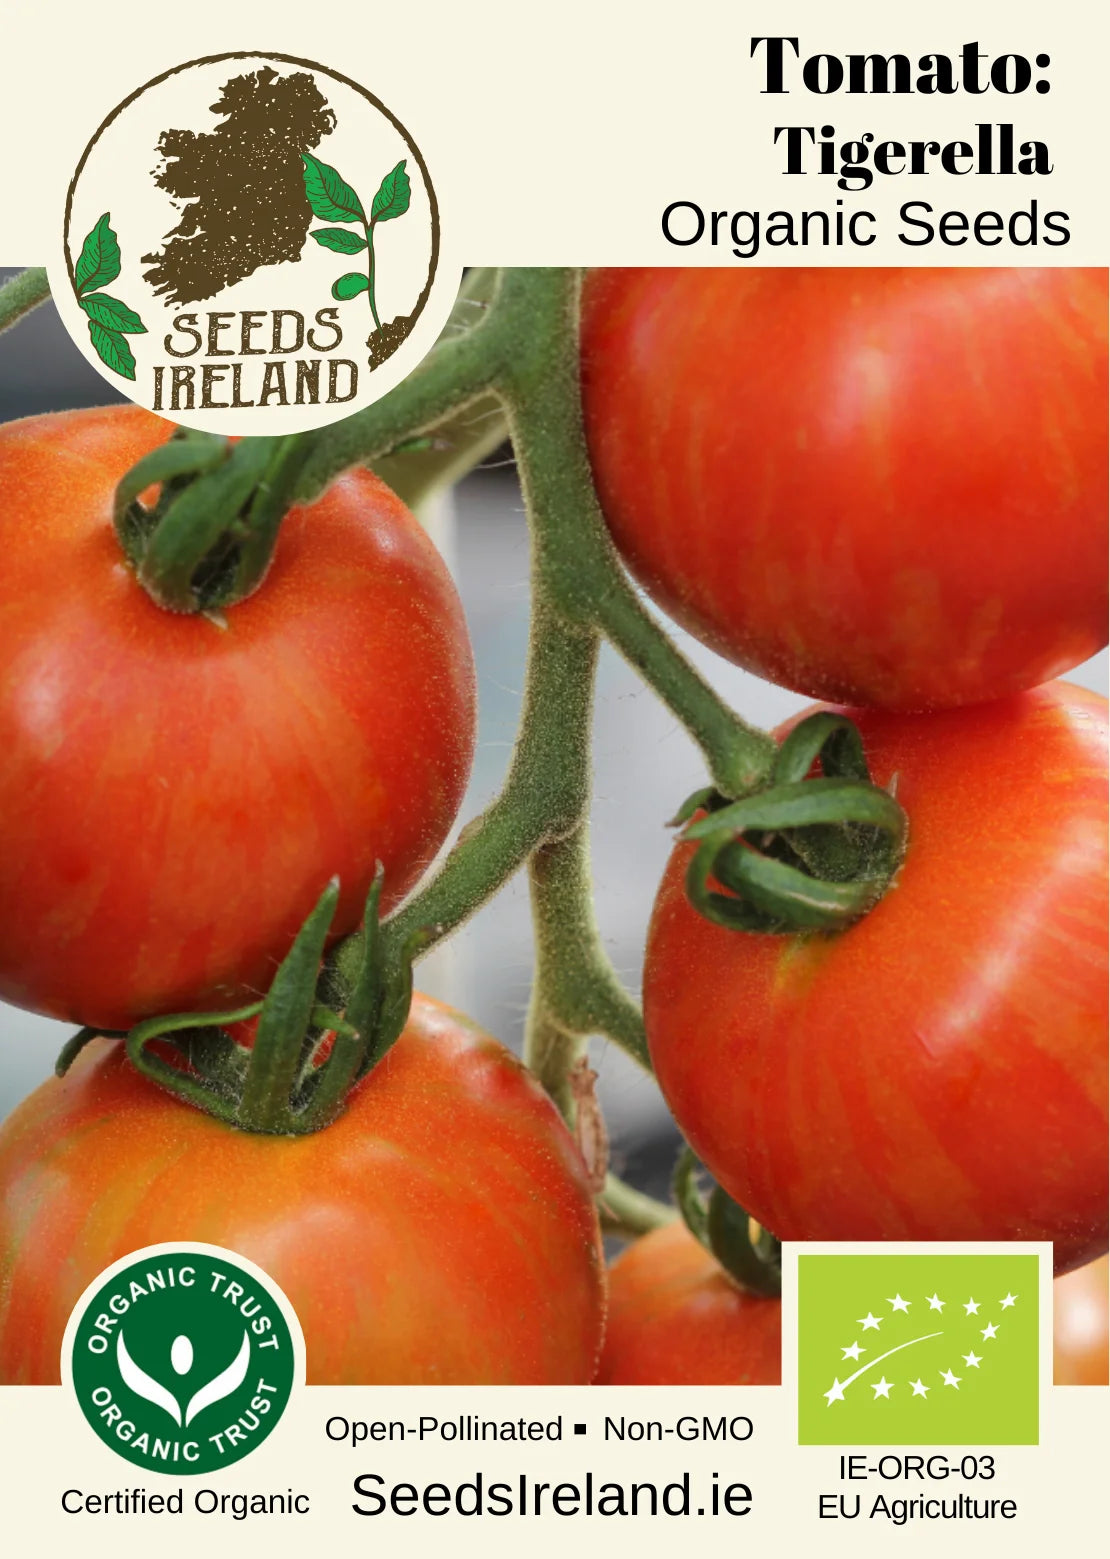 Tomato: Tigerella Organic Seed